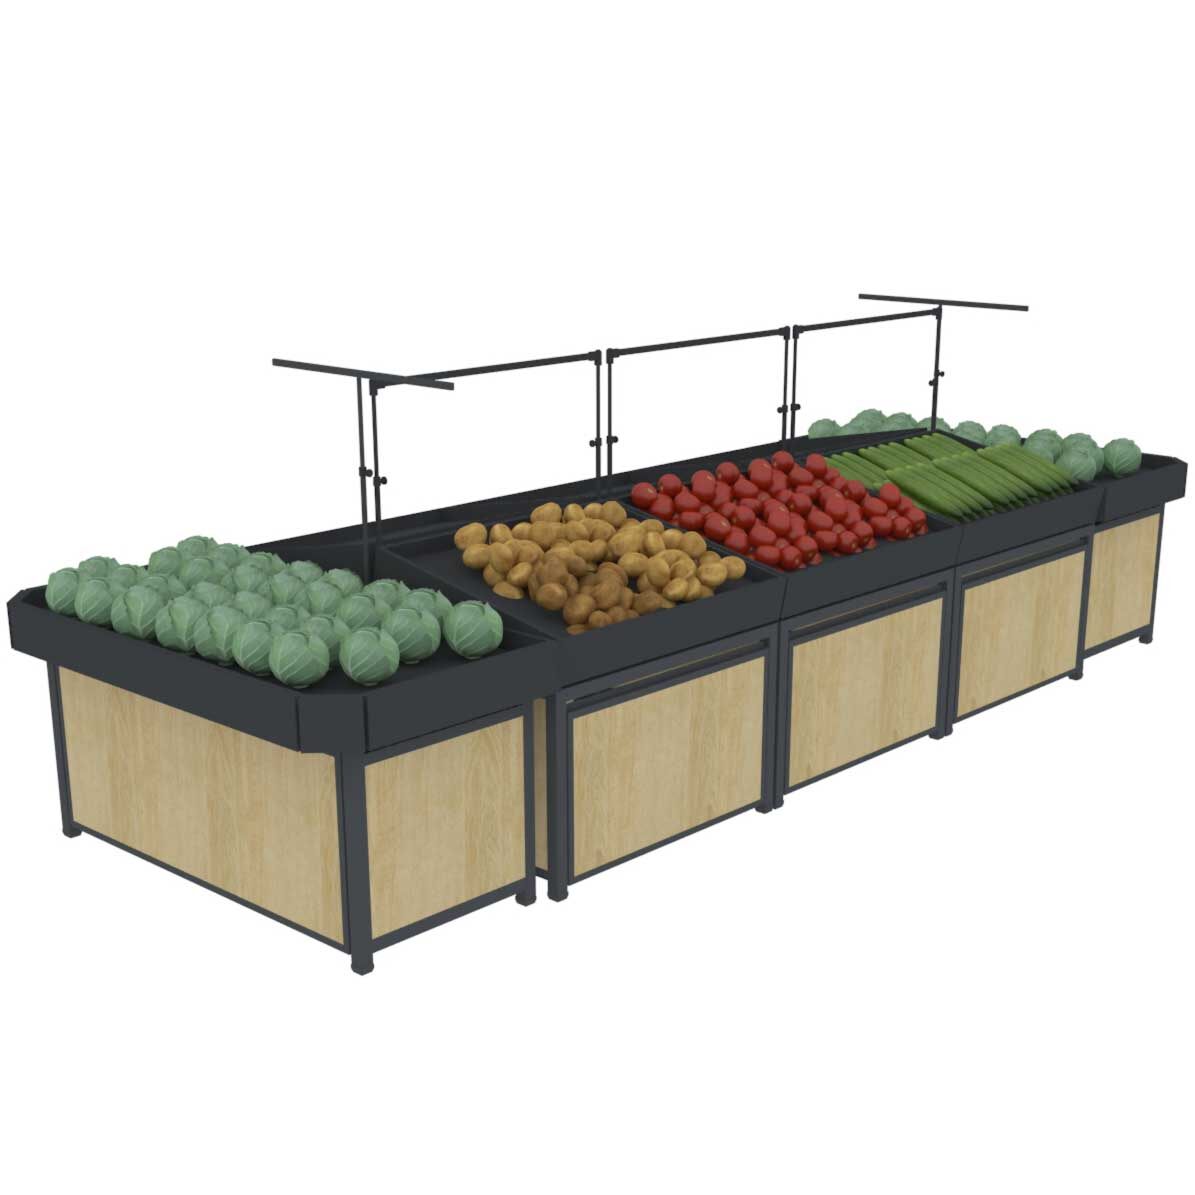 Supermarket Vegetable And Fruit Display Shelf